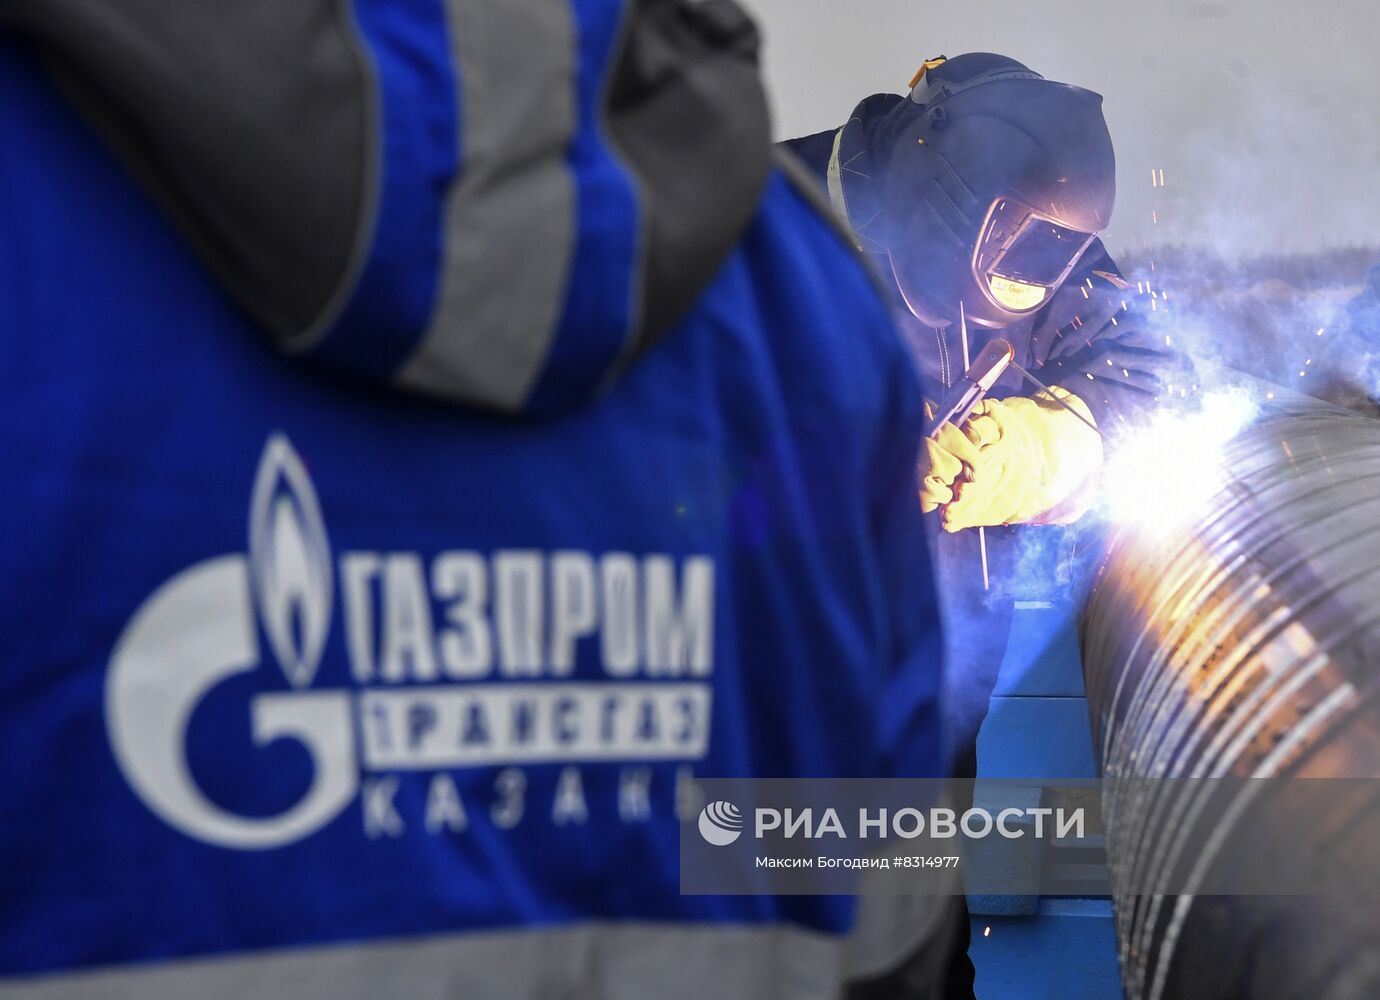 Старт проекта распределительного газопровода высокого давления ПАО "Газпром" в Татарстане